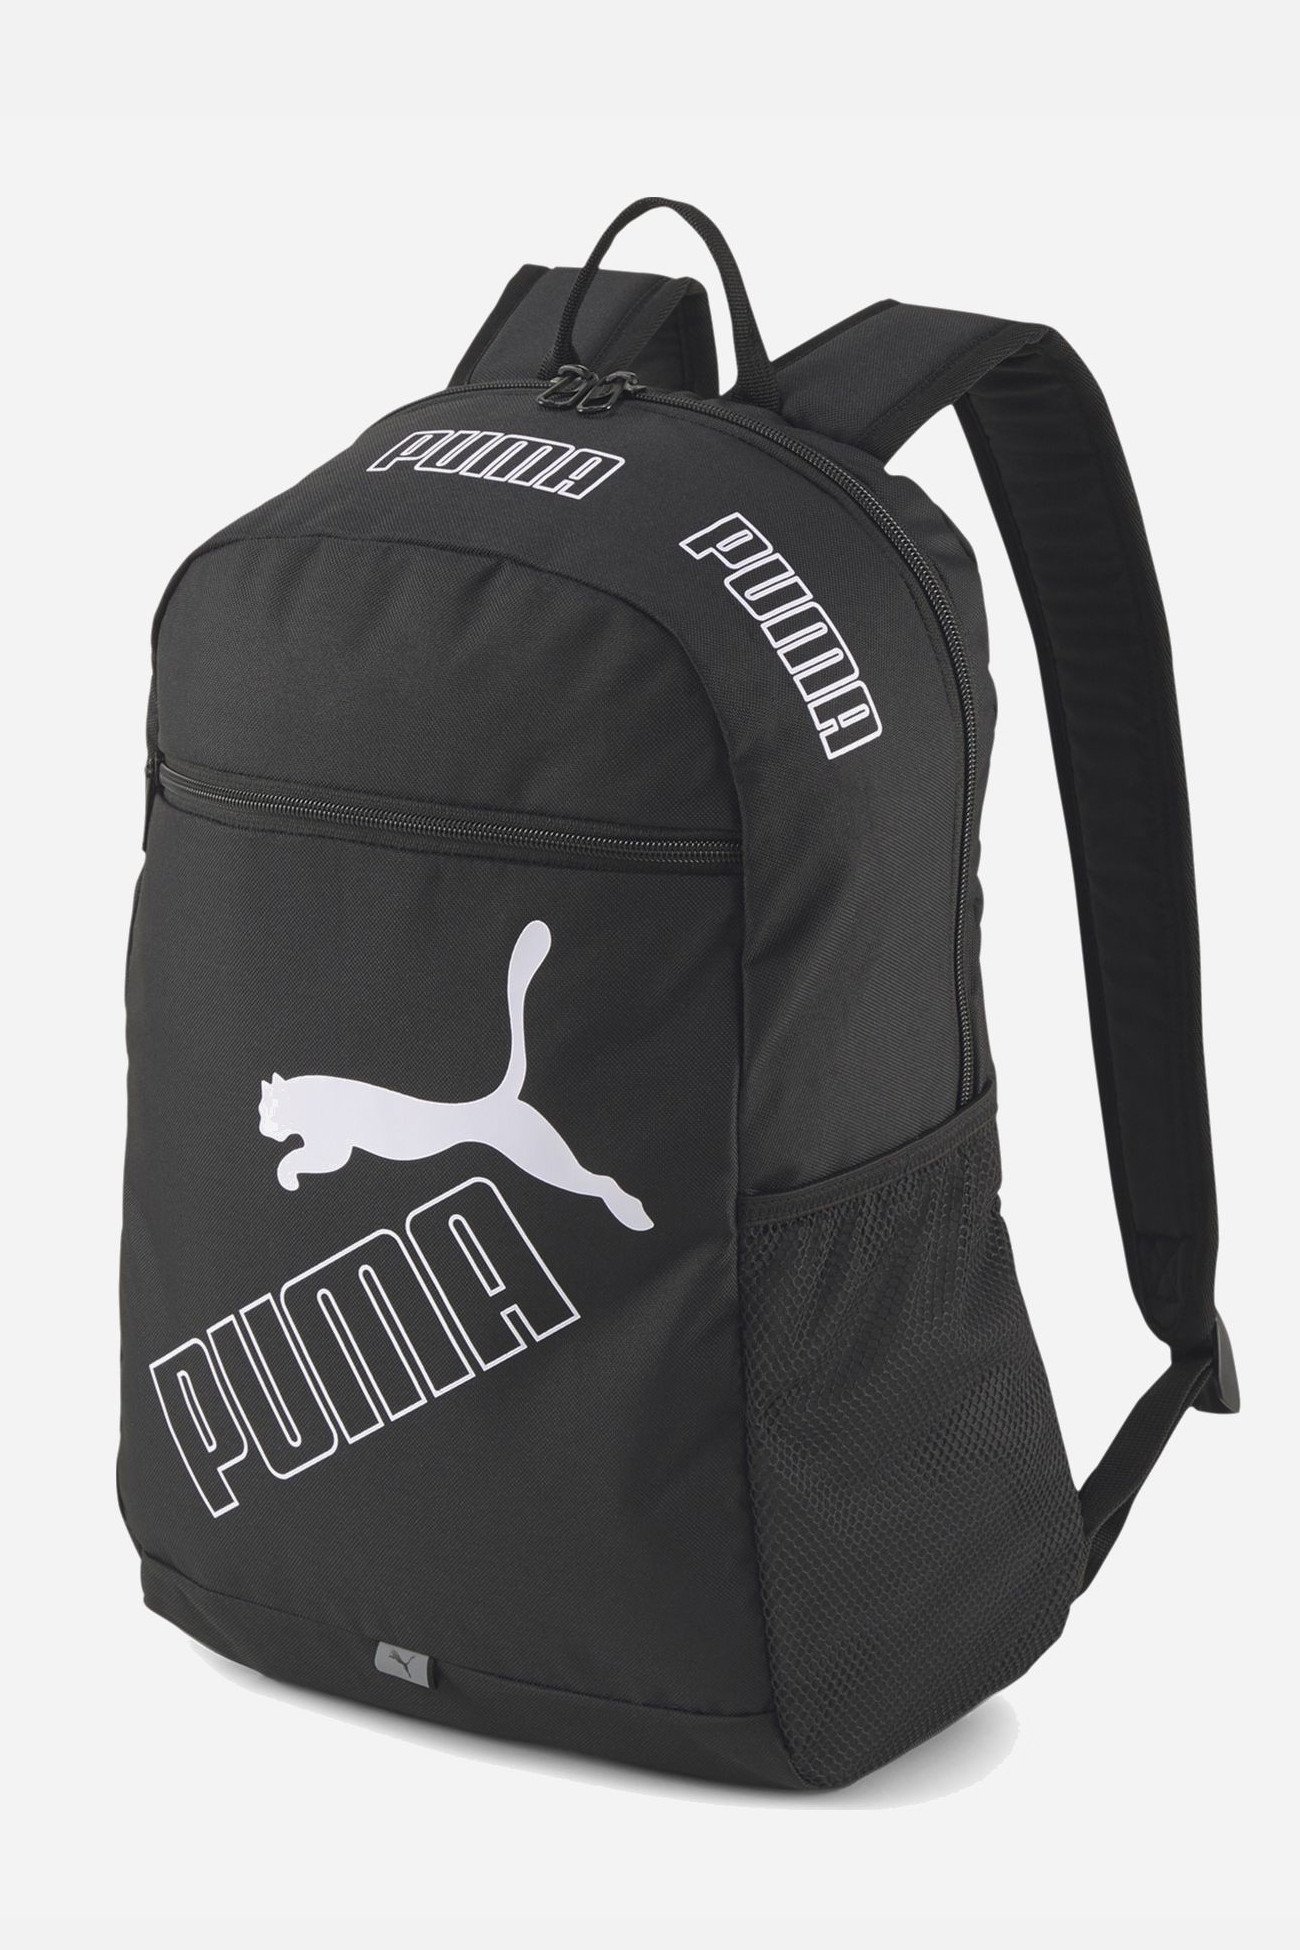 Рюкзак  Puma PUMA Phase Backpack II черный 07729501 изображение 2